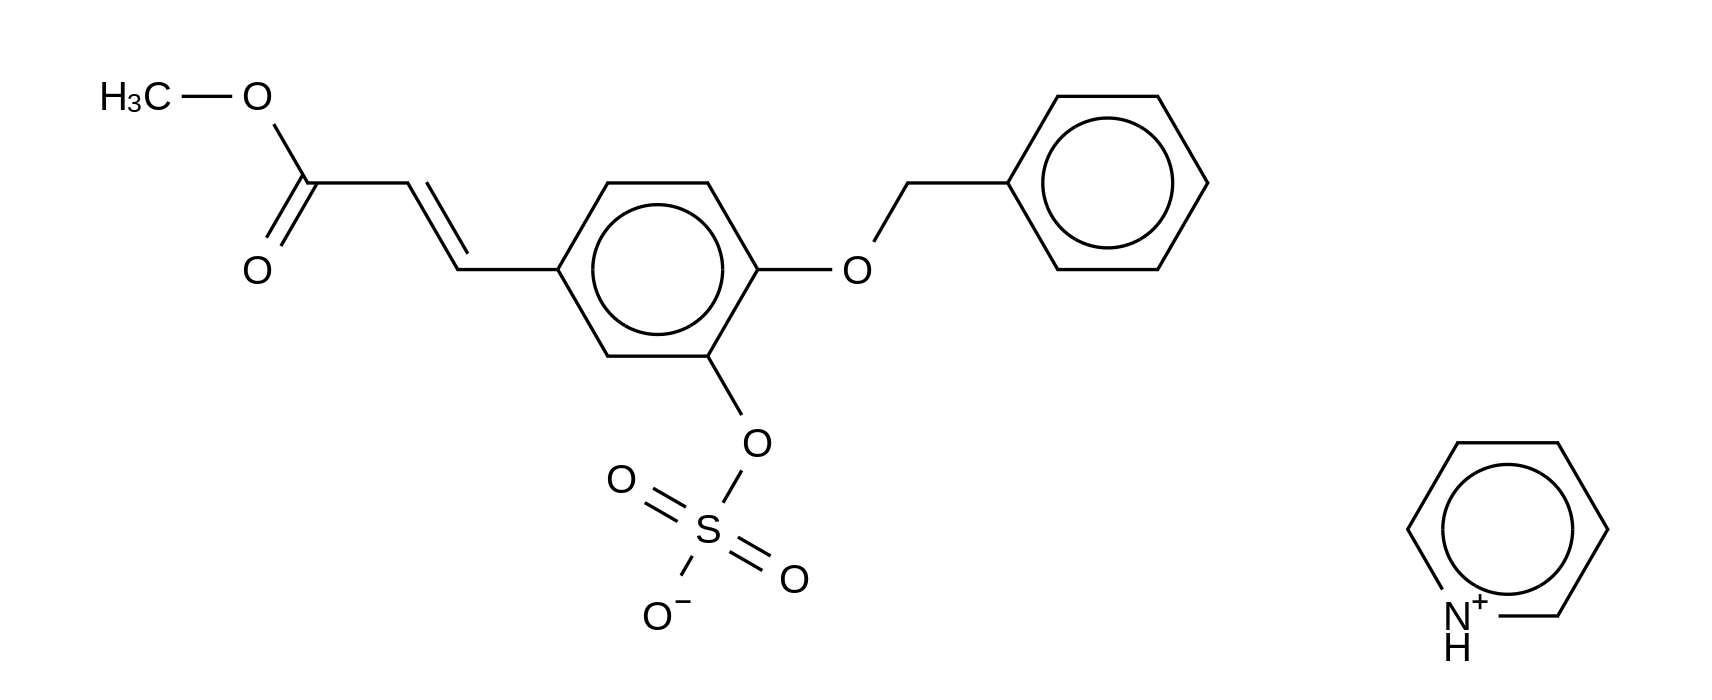 4-O-Benzyl-caffeic Acid 3-O-Sulfate Methyl Ester Pyridinium Salt